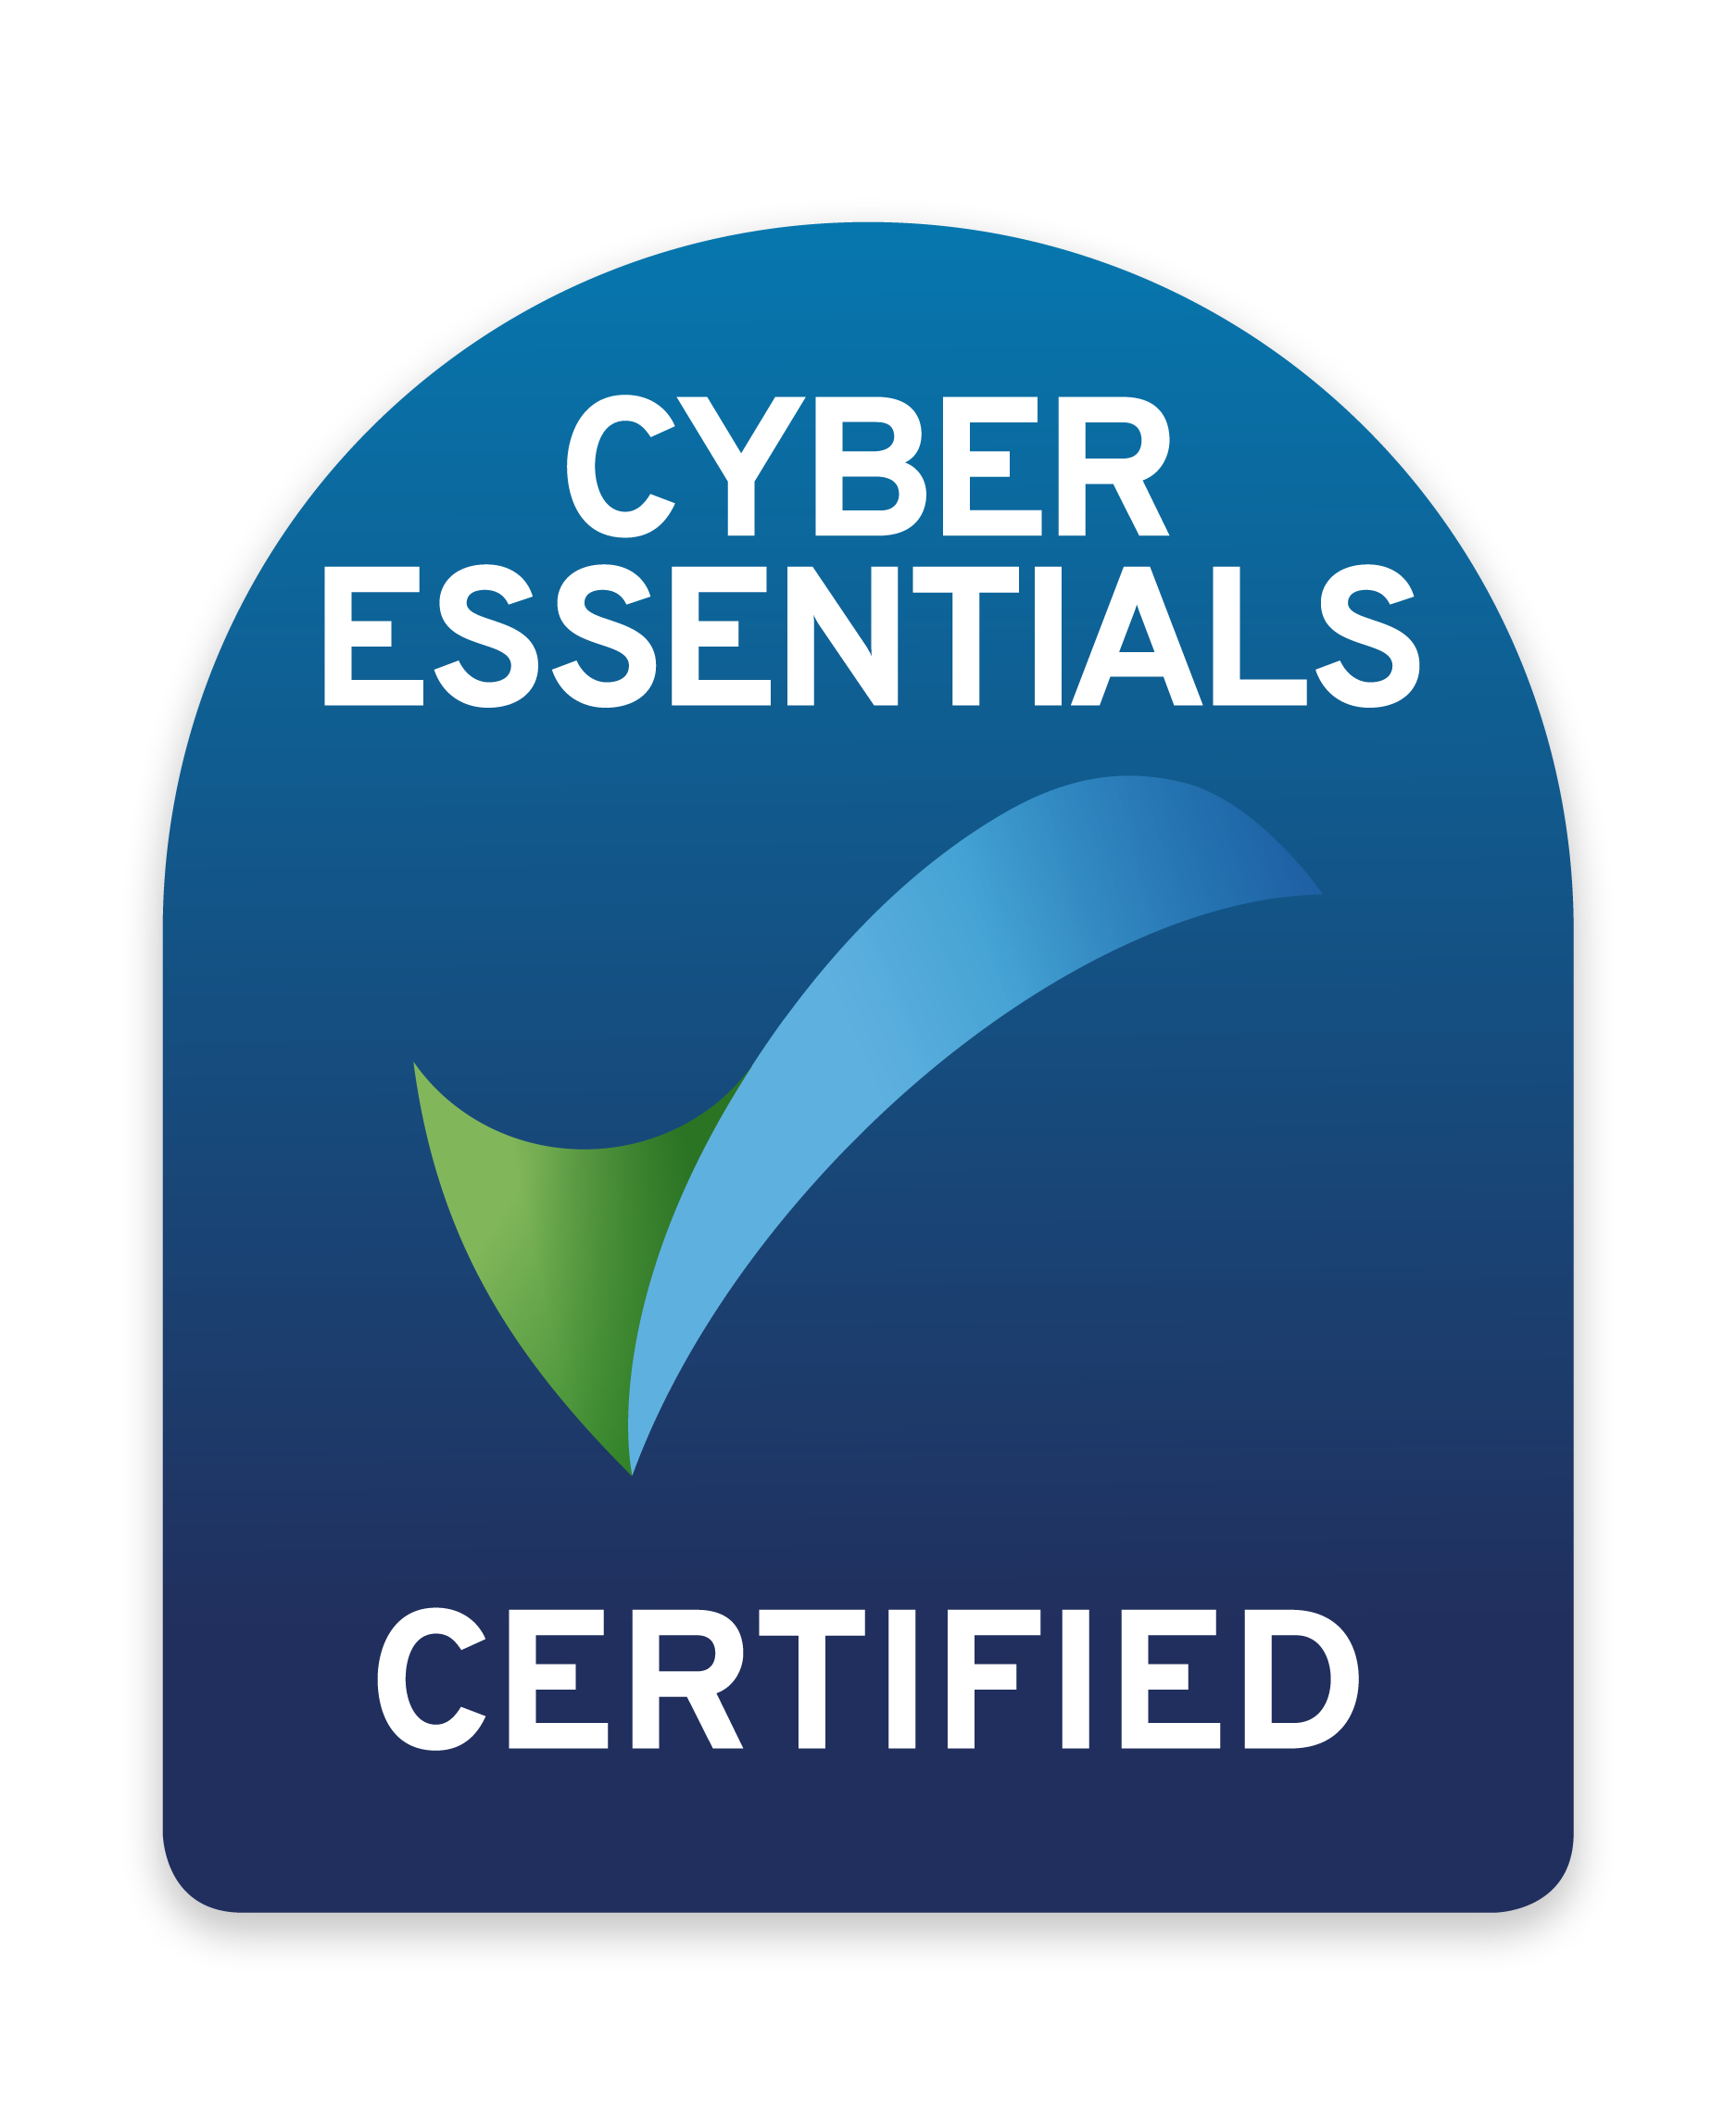 IMSM CH Cyber Essentials Certification